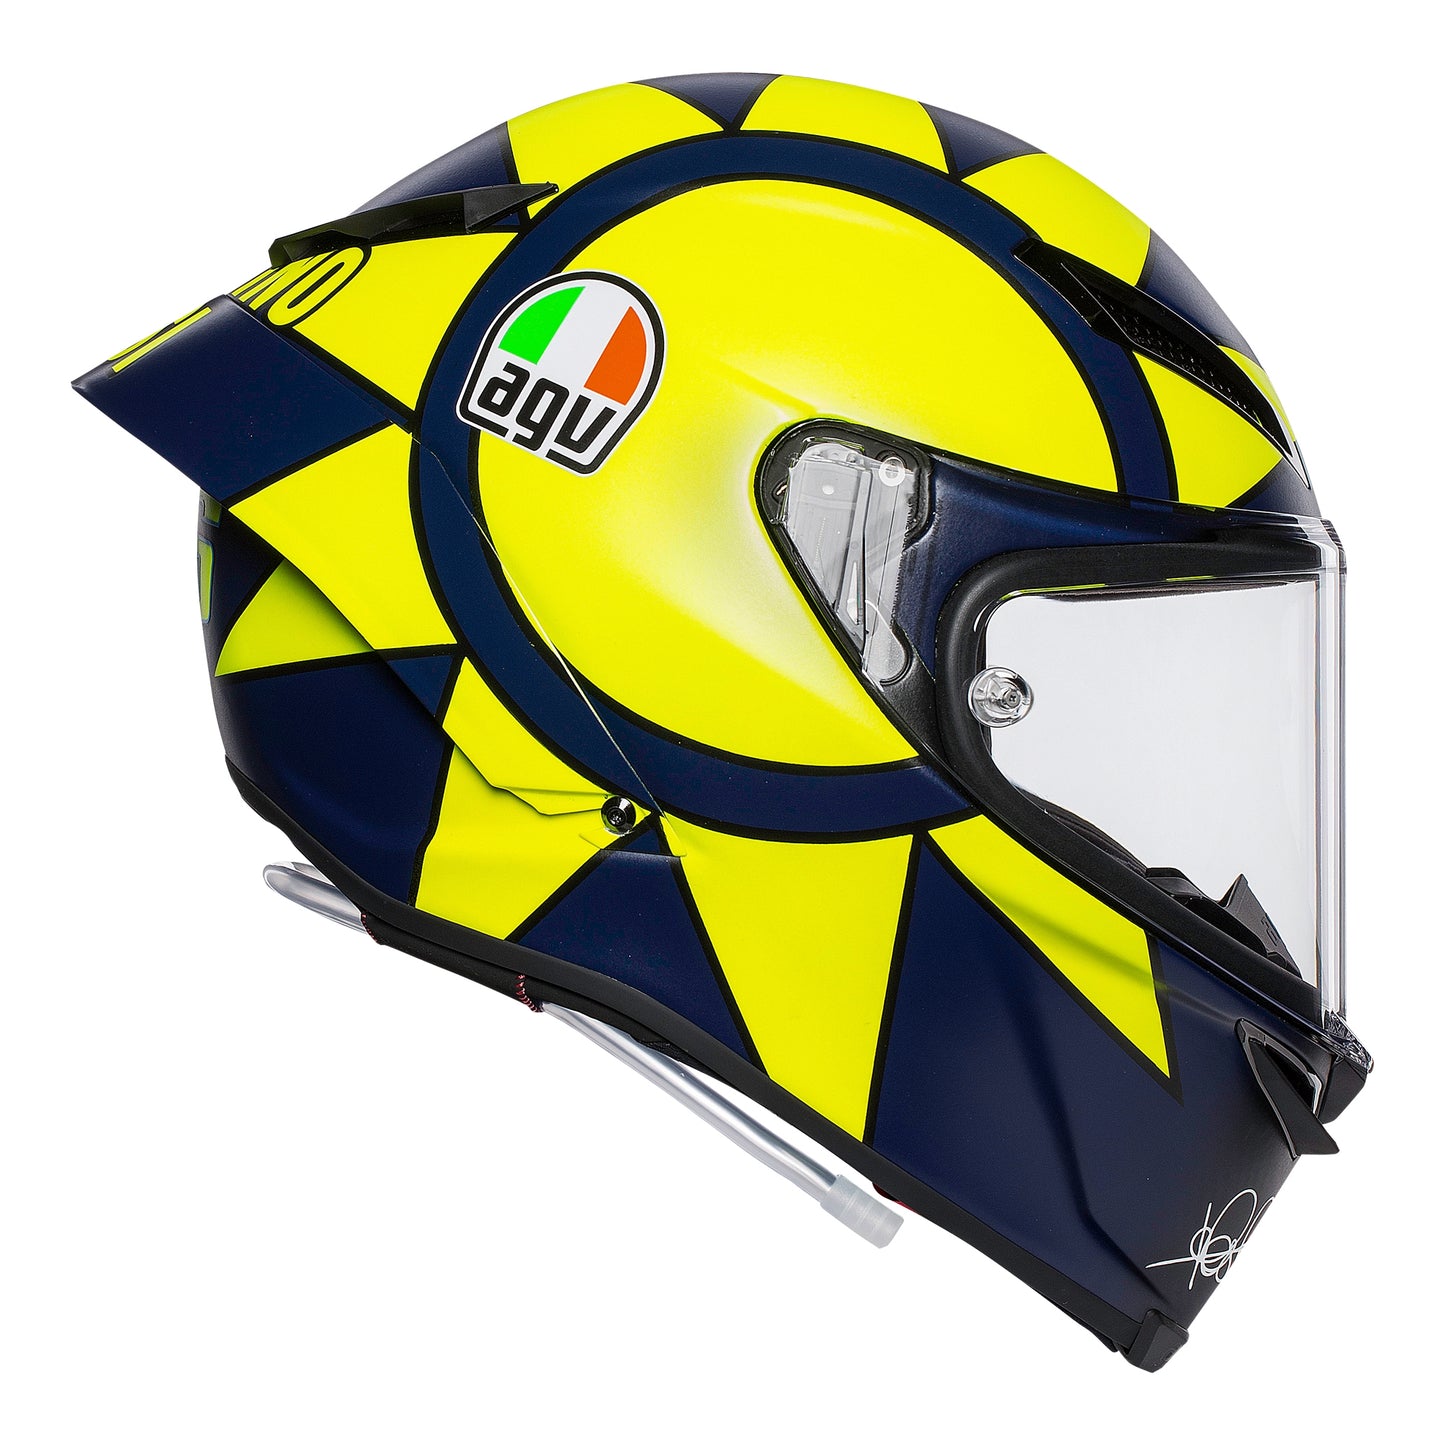 AGV Pista GP-RR - Soleluna 2019  Motorcycle Helmet